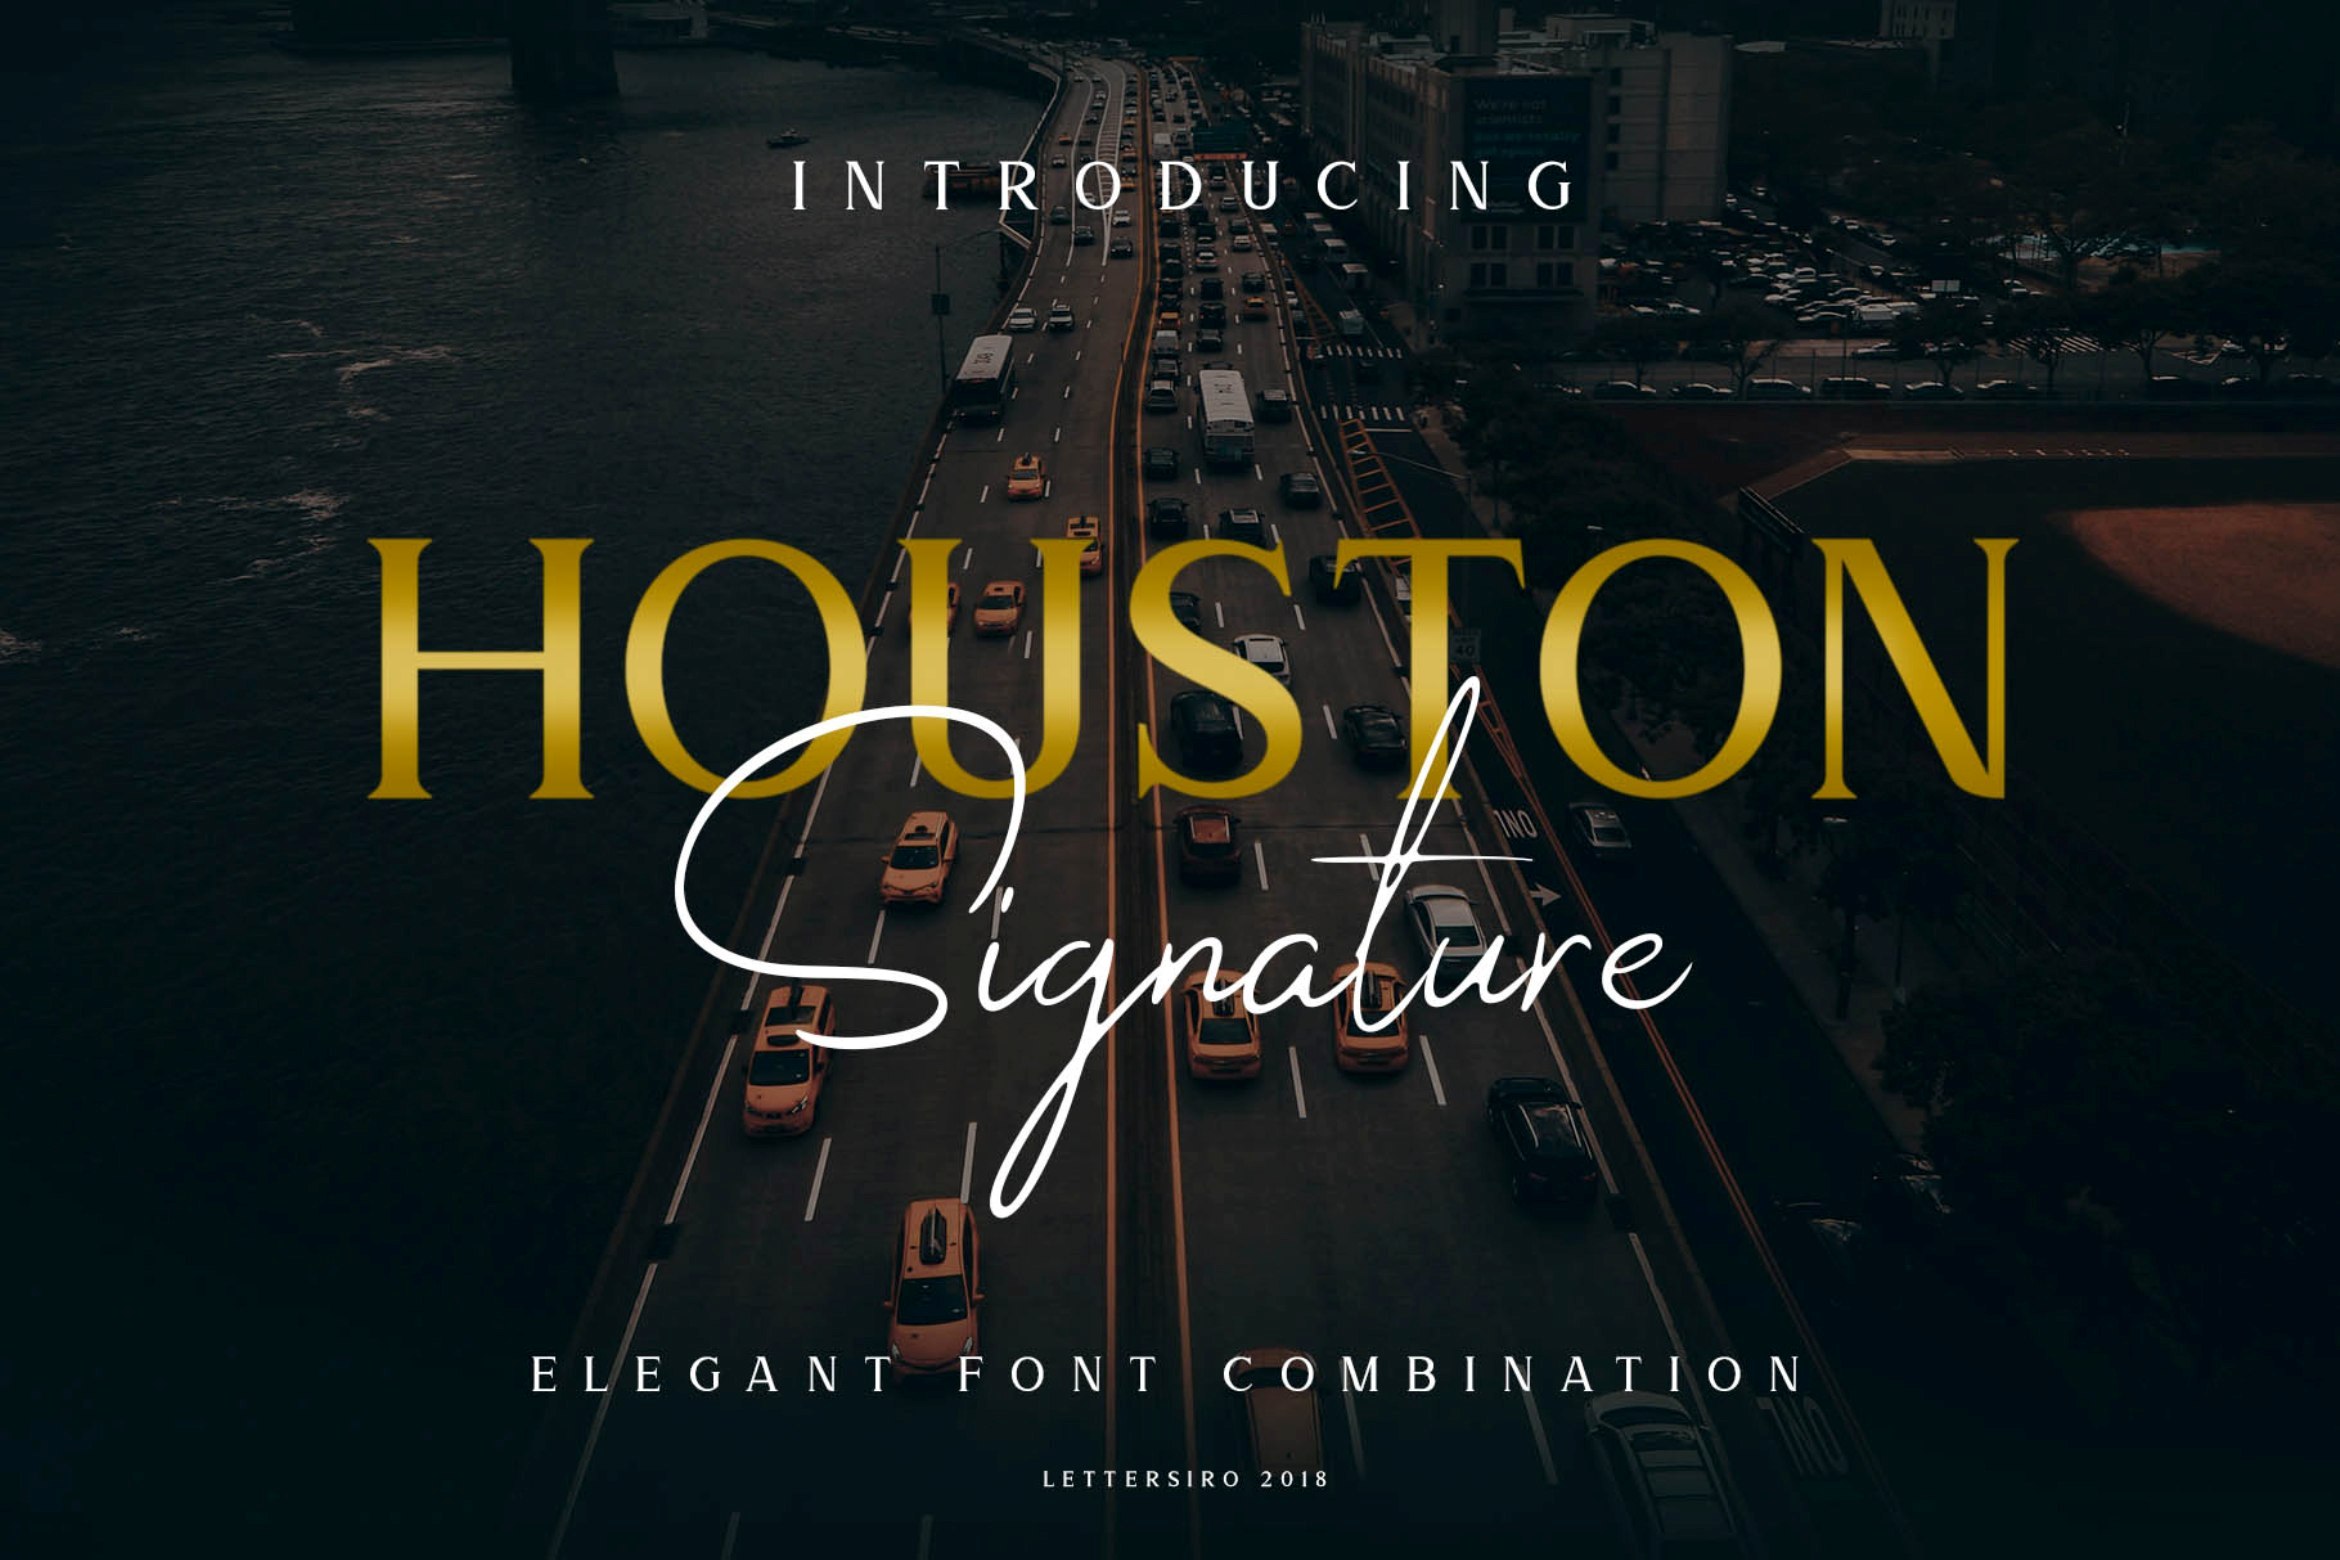 Houston Font Poster 1